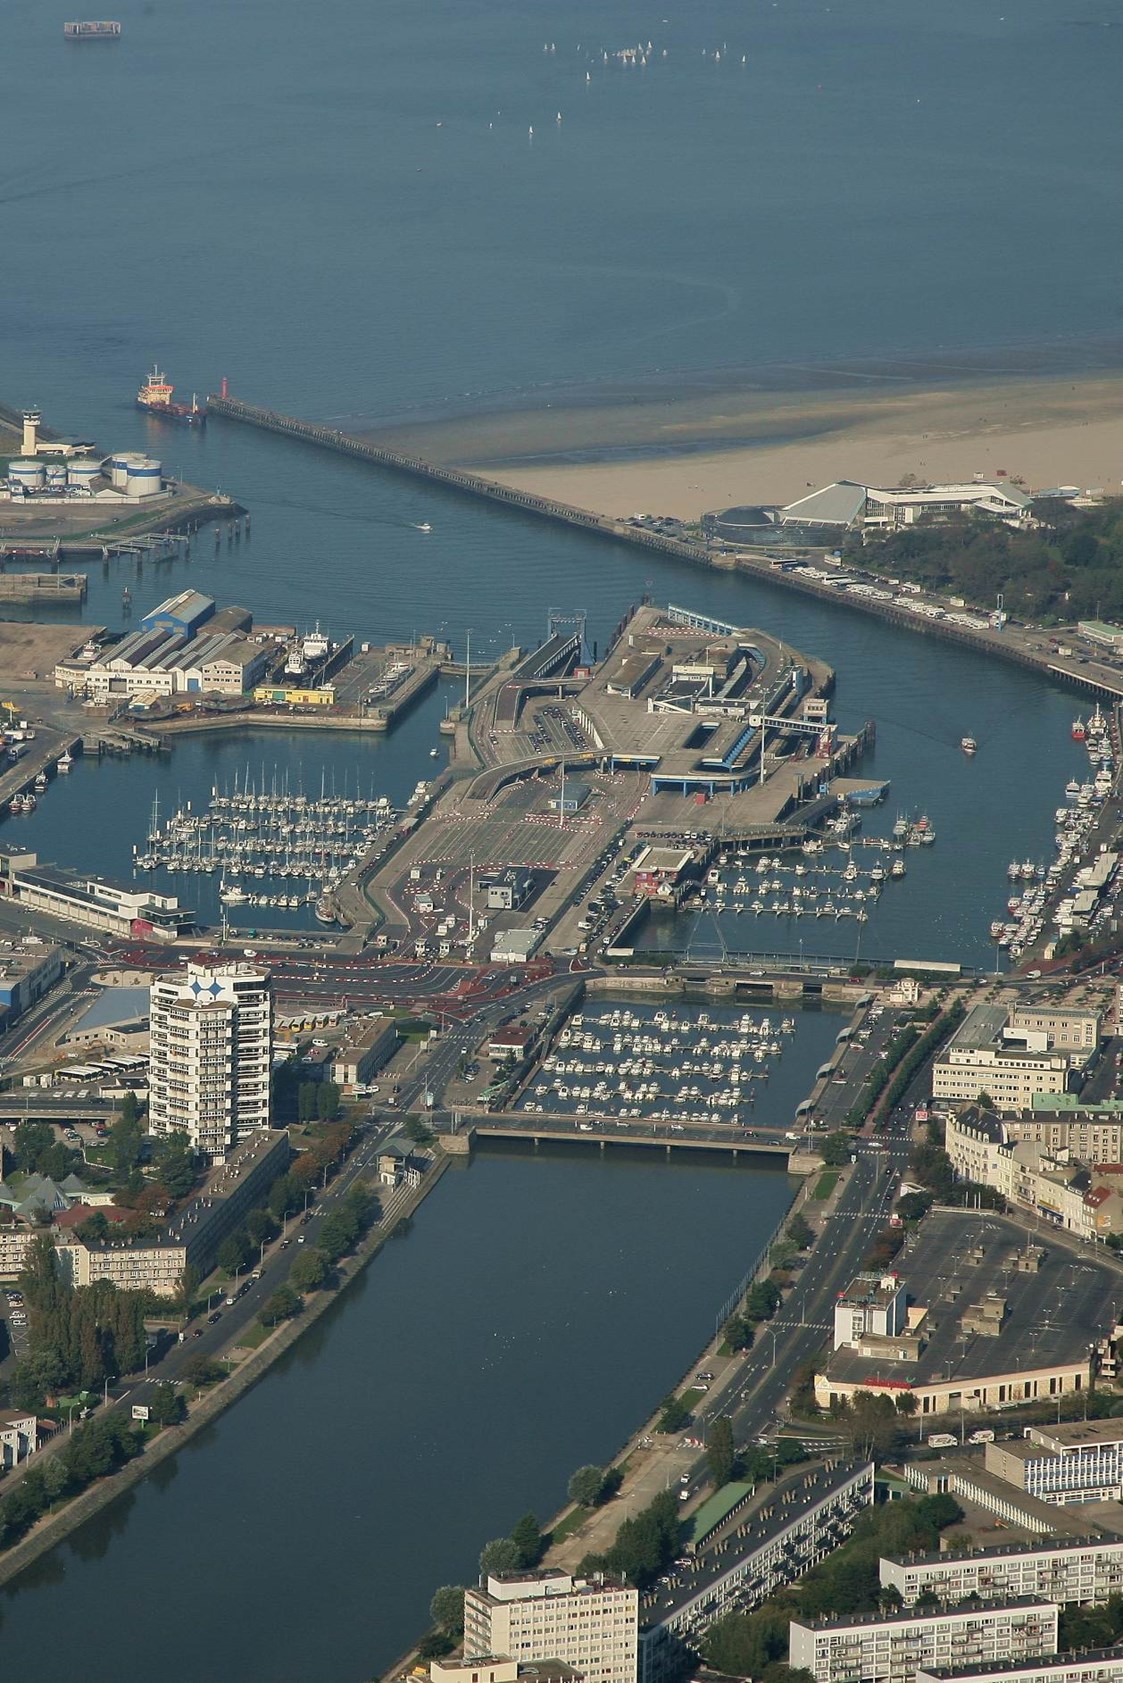 Marina: Bildquelle: www.portboulogne.com - Port de plaisance Boulogne-sur-Mer